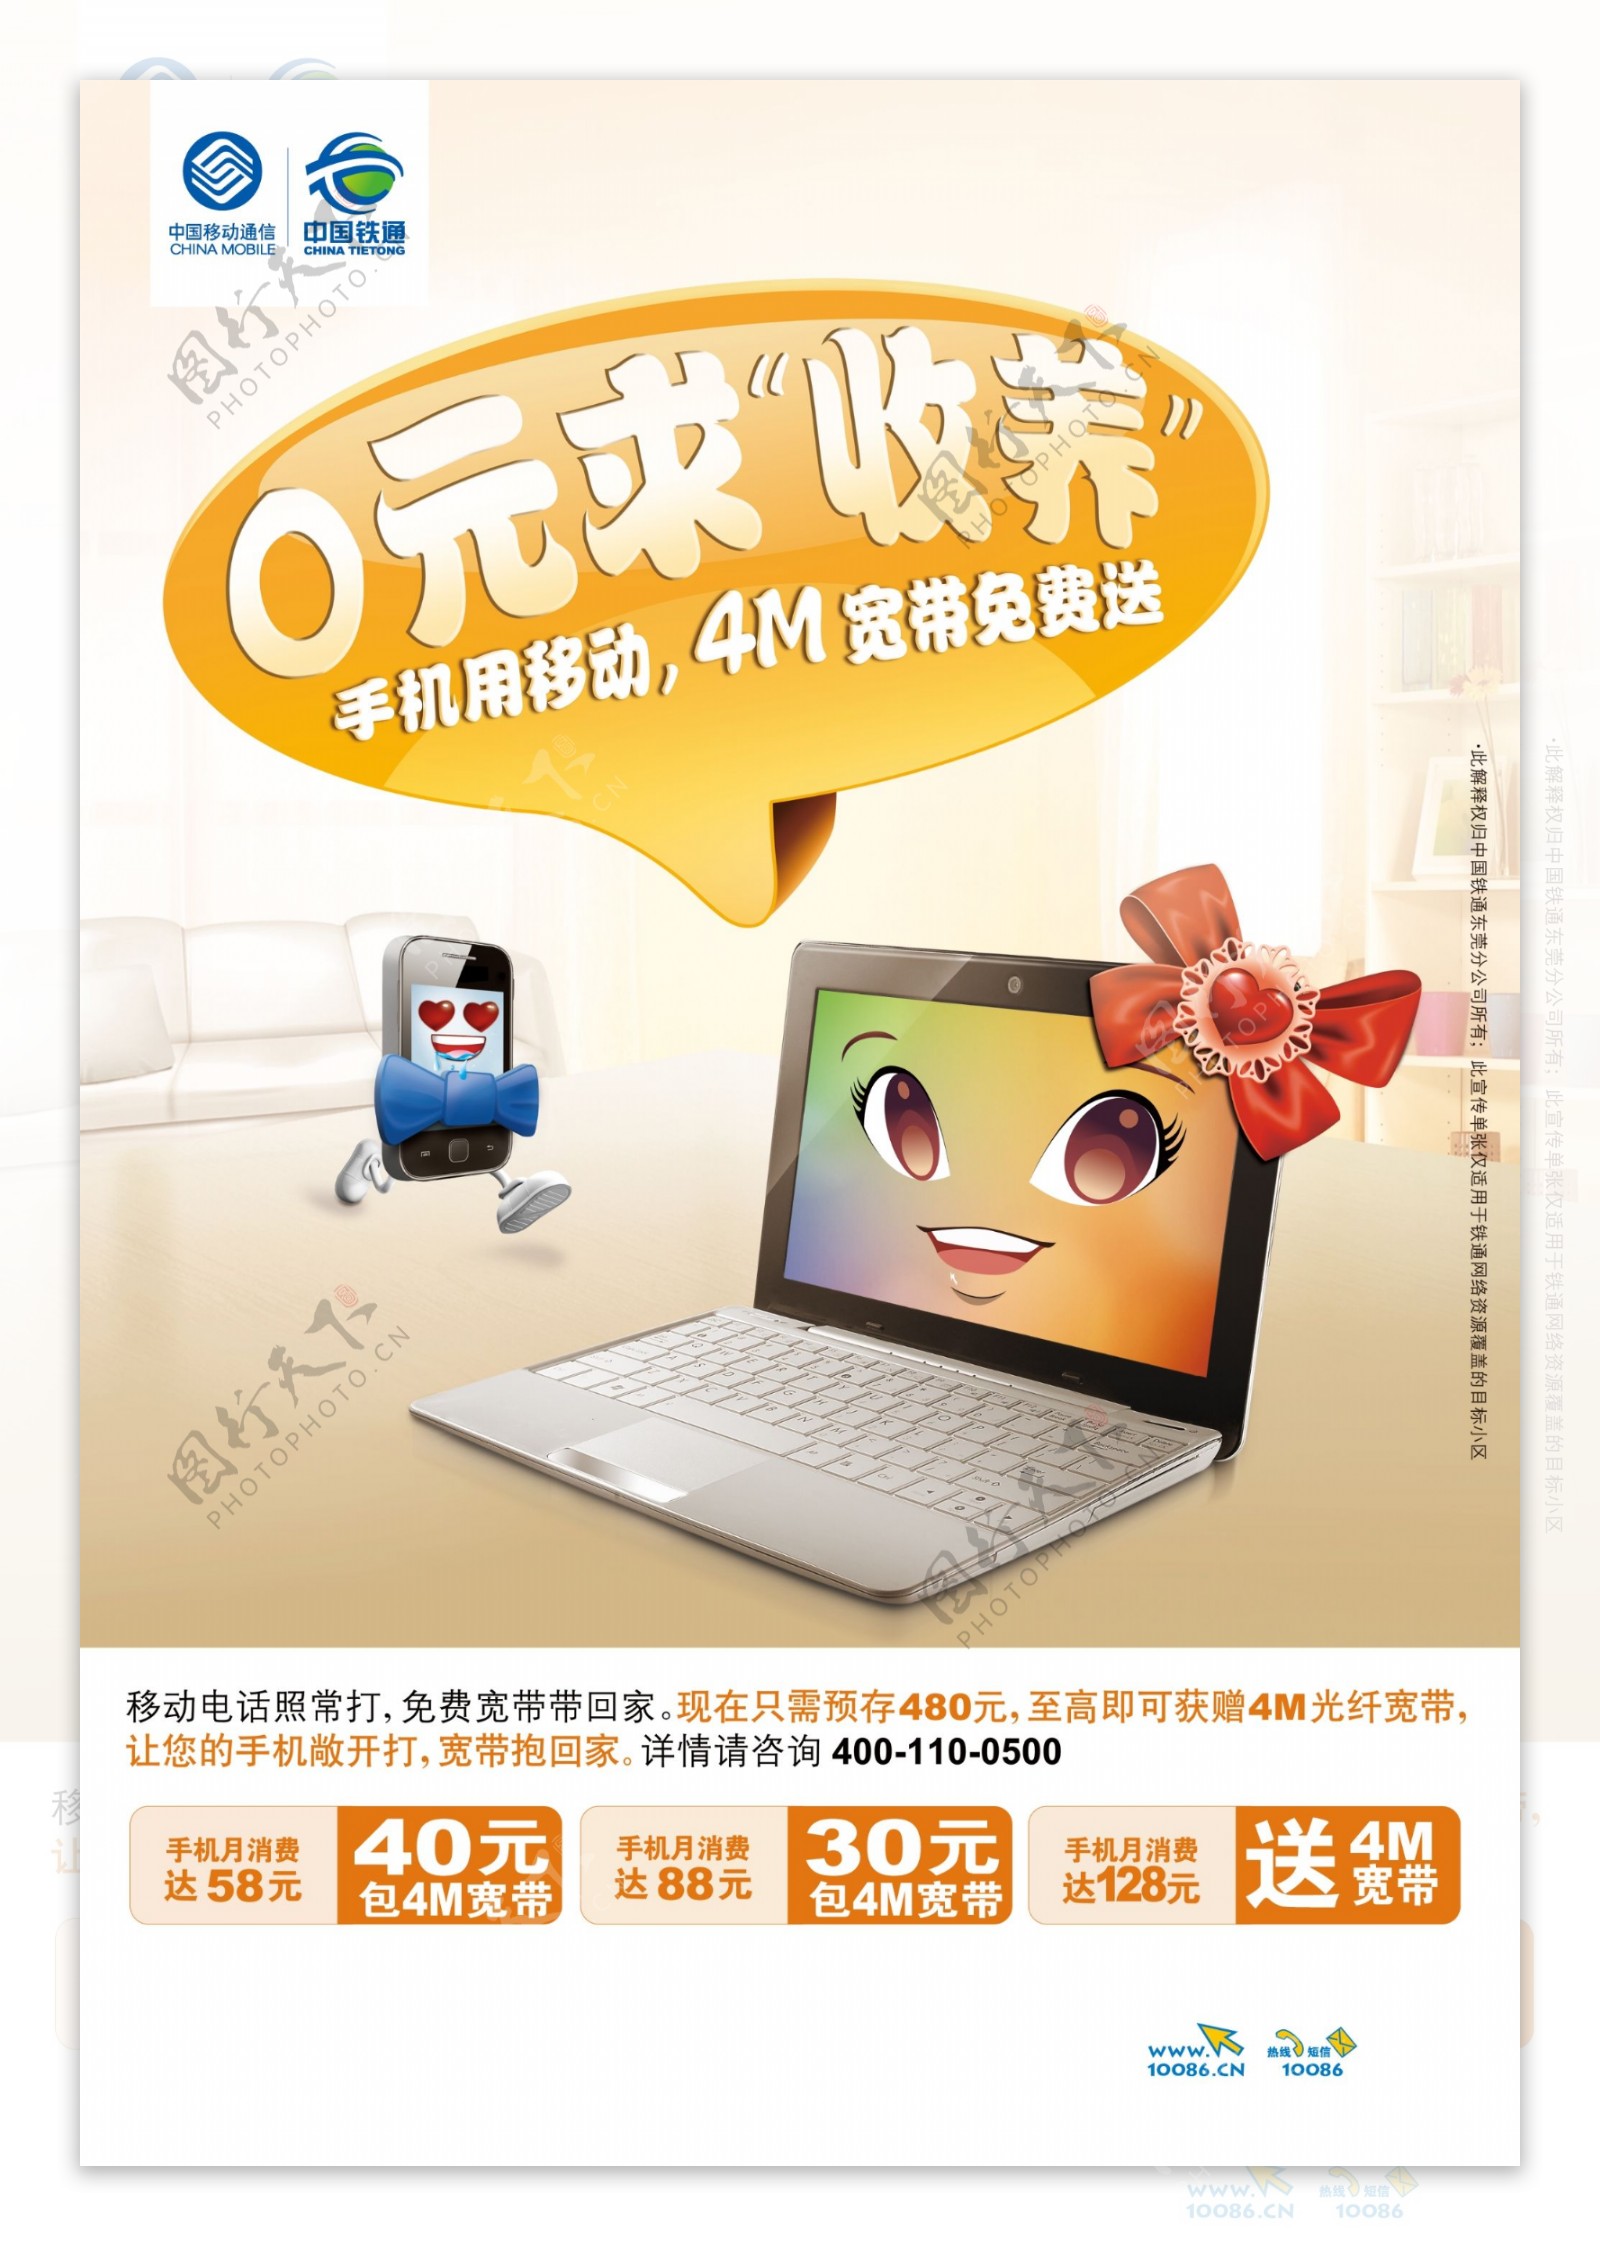 中国移动宽带业务广告PSD素材